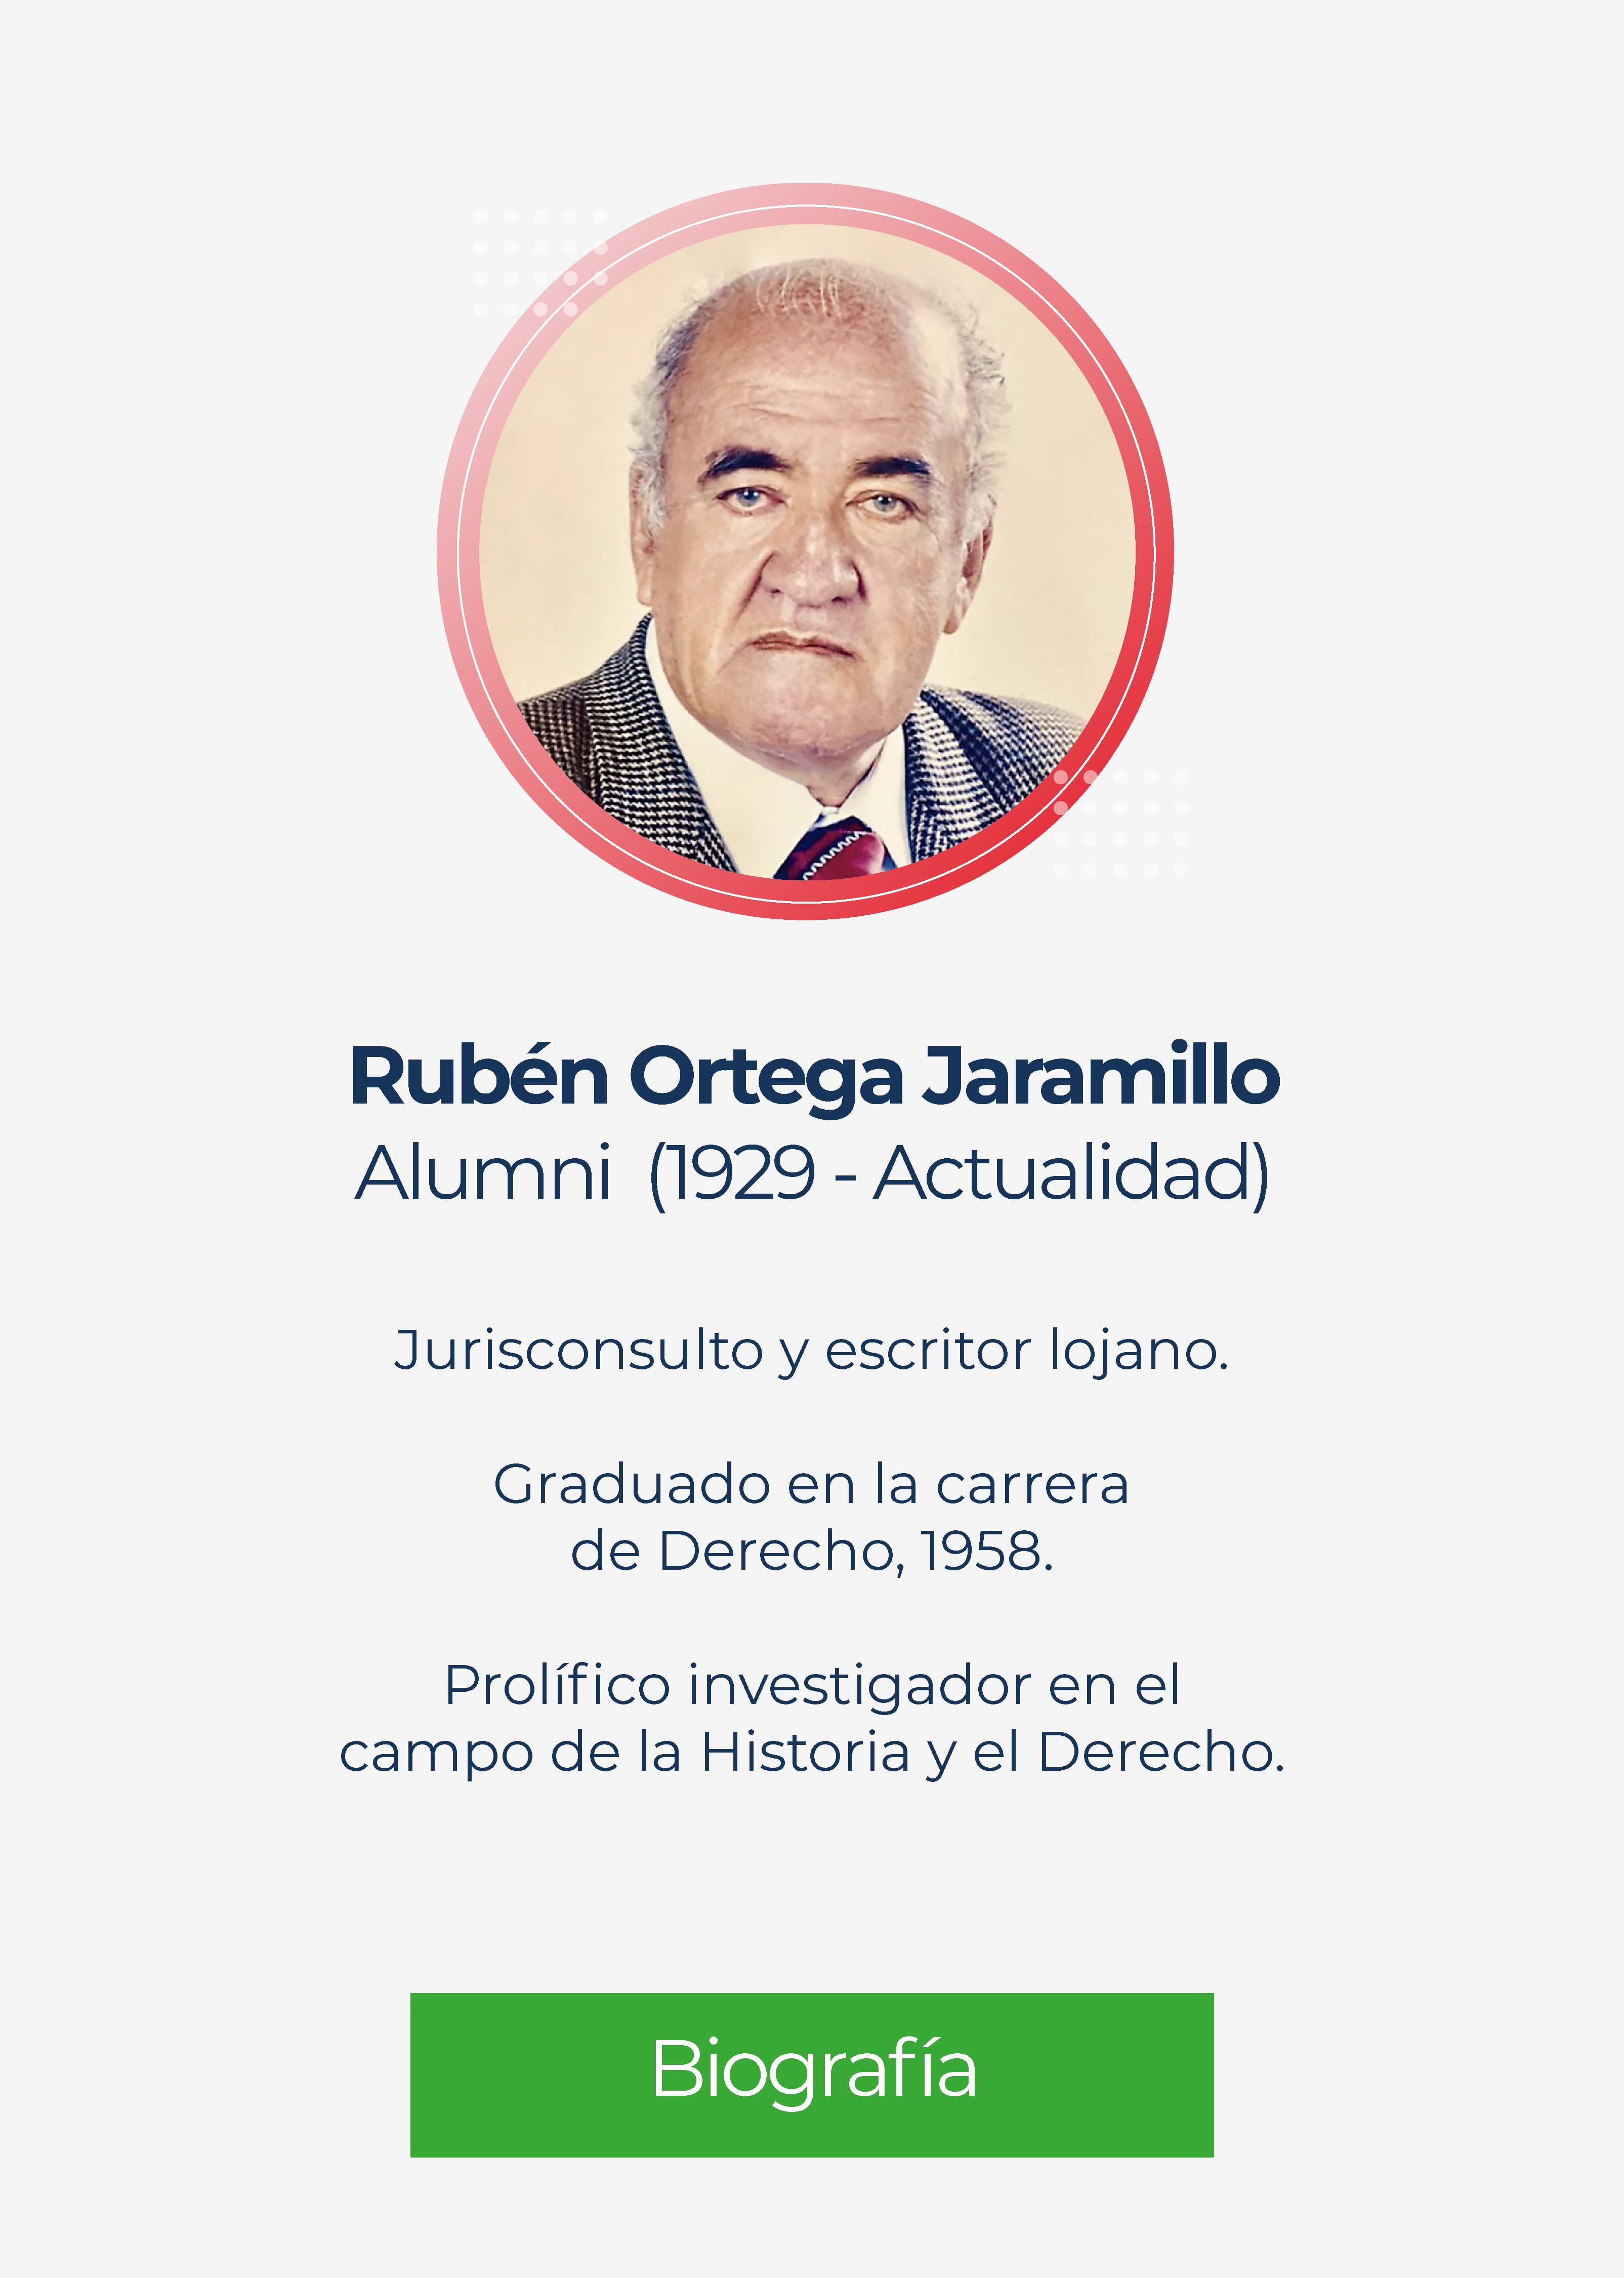 Rubén Ortega Jaramillo